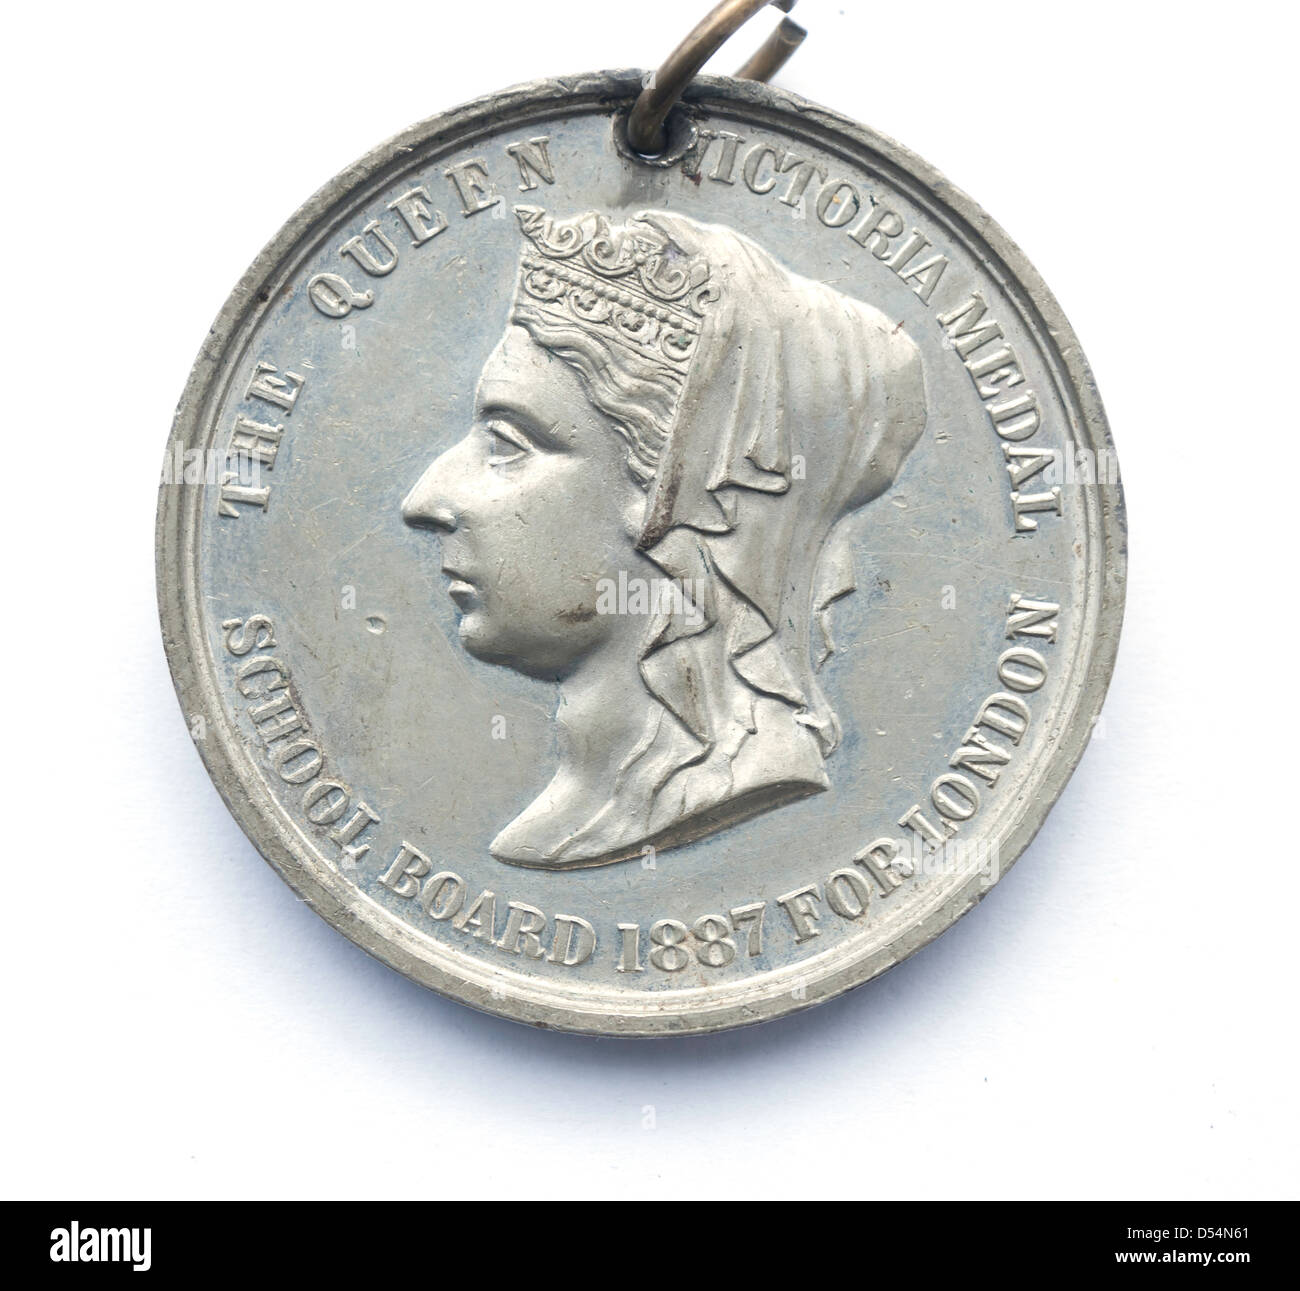 Consiglio scolastico per Londra Queen Victoria Medal 1887 presentato per i fotografi di nonno nel 1888 per la presenza perfetta Foto Stock